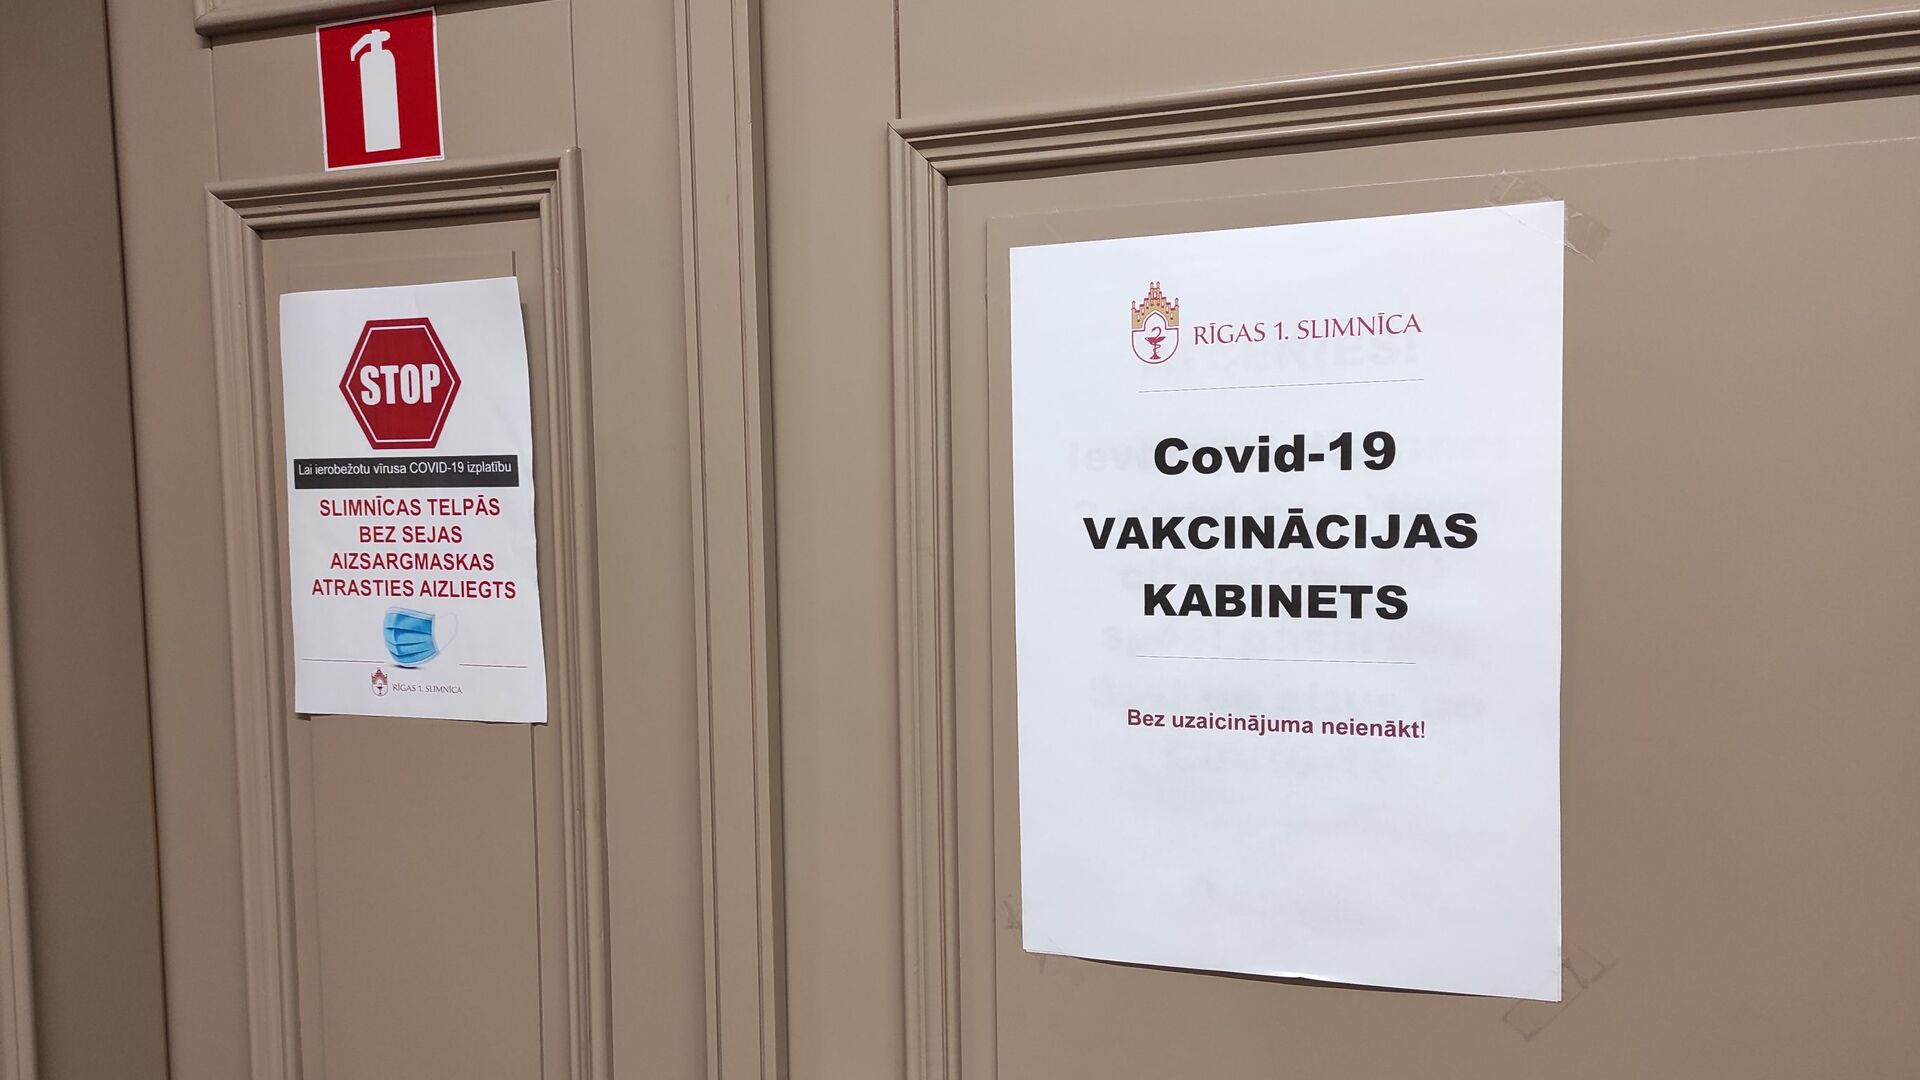 Кабинет вакцинации в Первой городской больнице Риги  - Sputnik Latvija, 1920, 27.04.2021